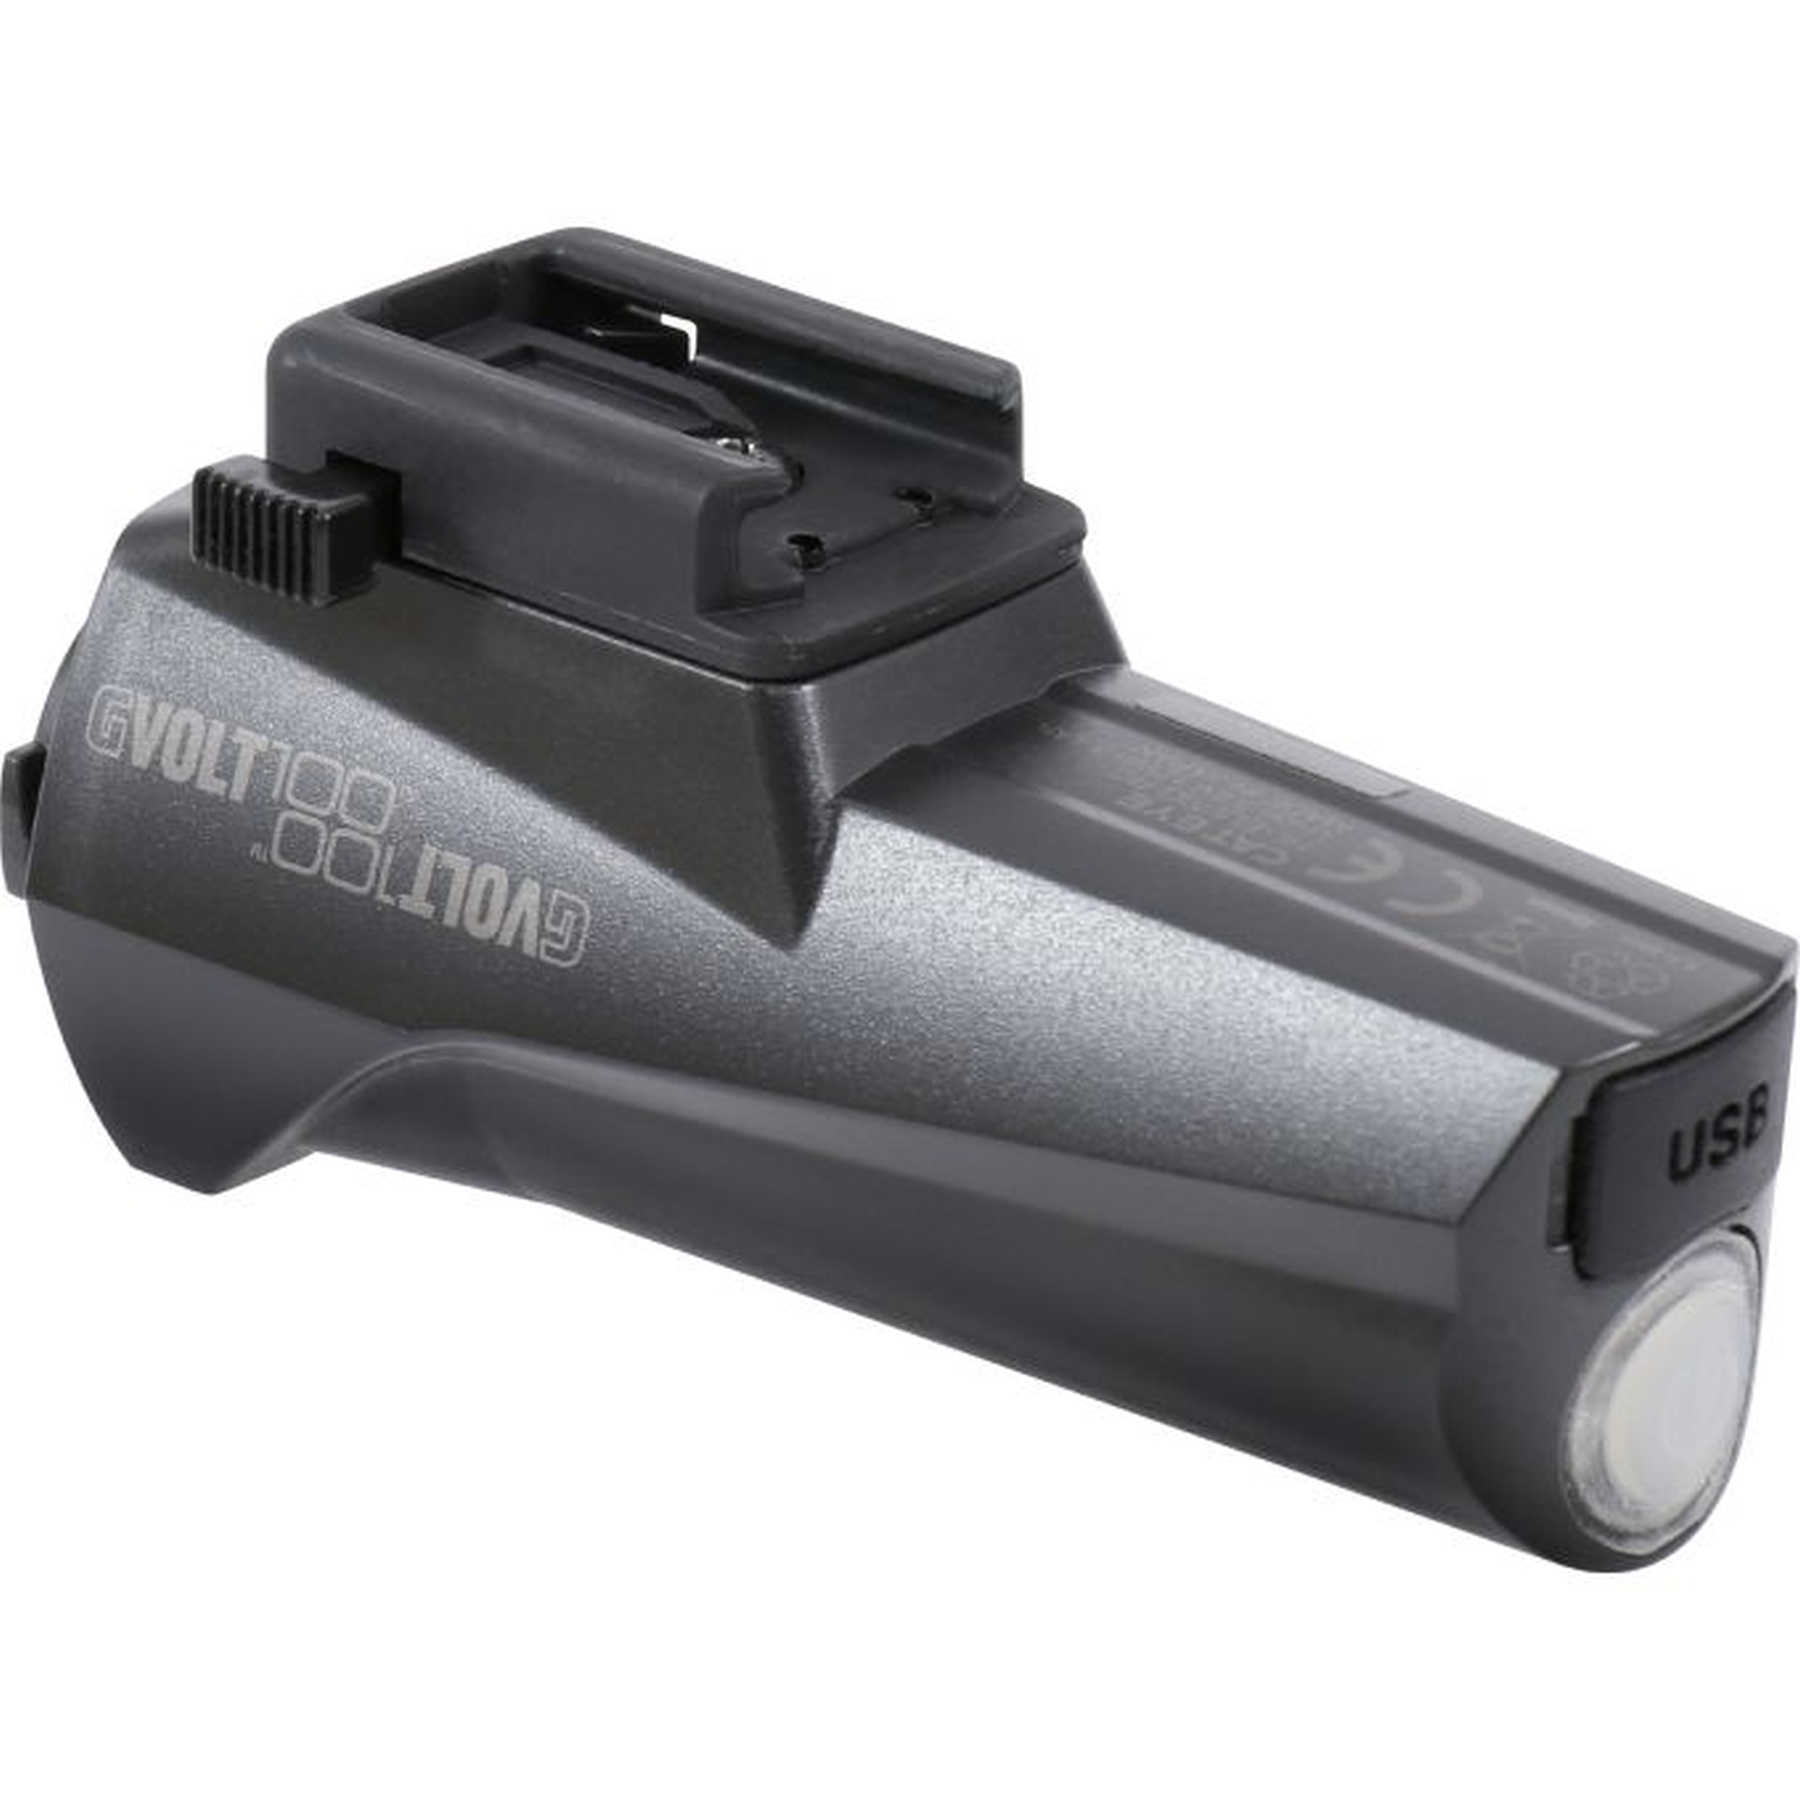 Picture of Cat Eye Battery GVolt 100 for E-Bike Light G E100 - black